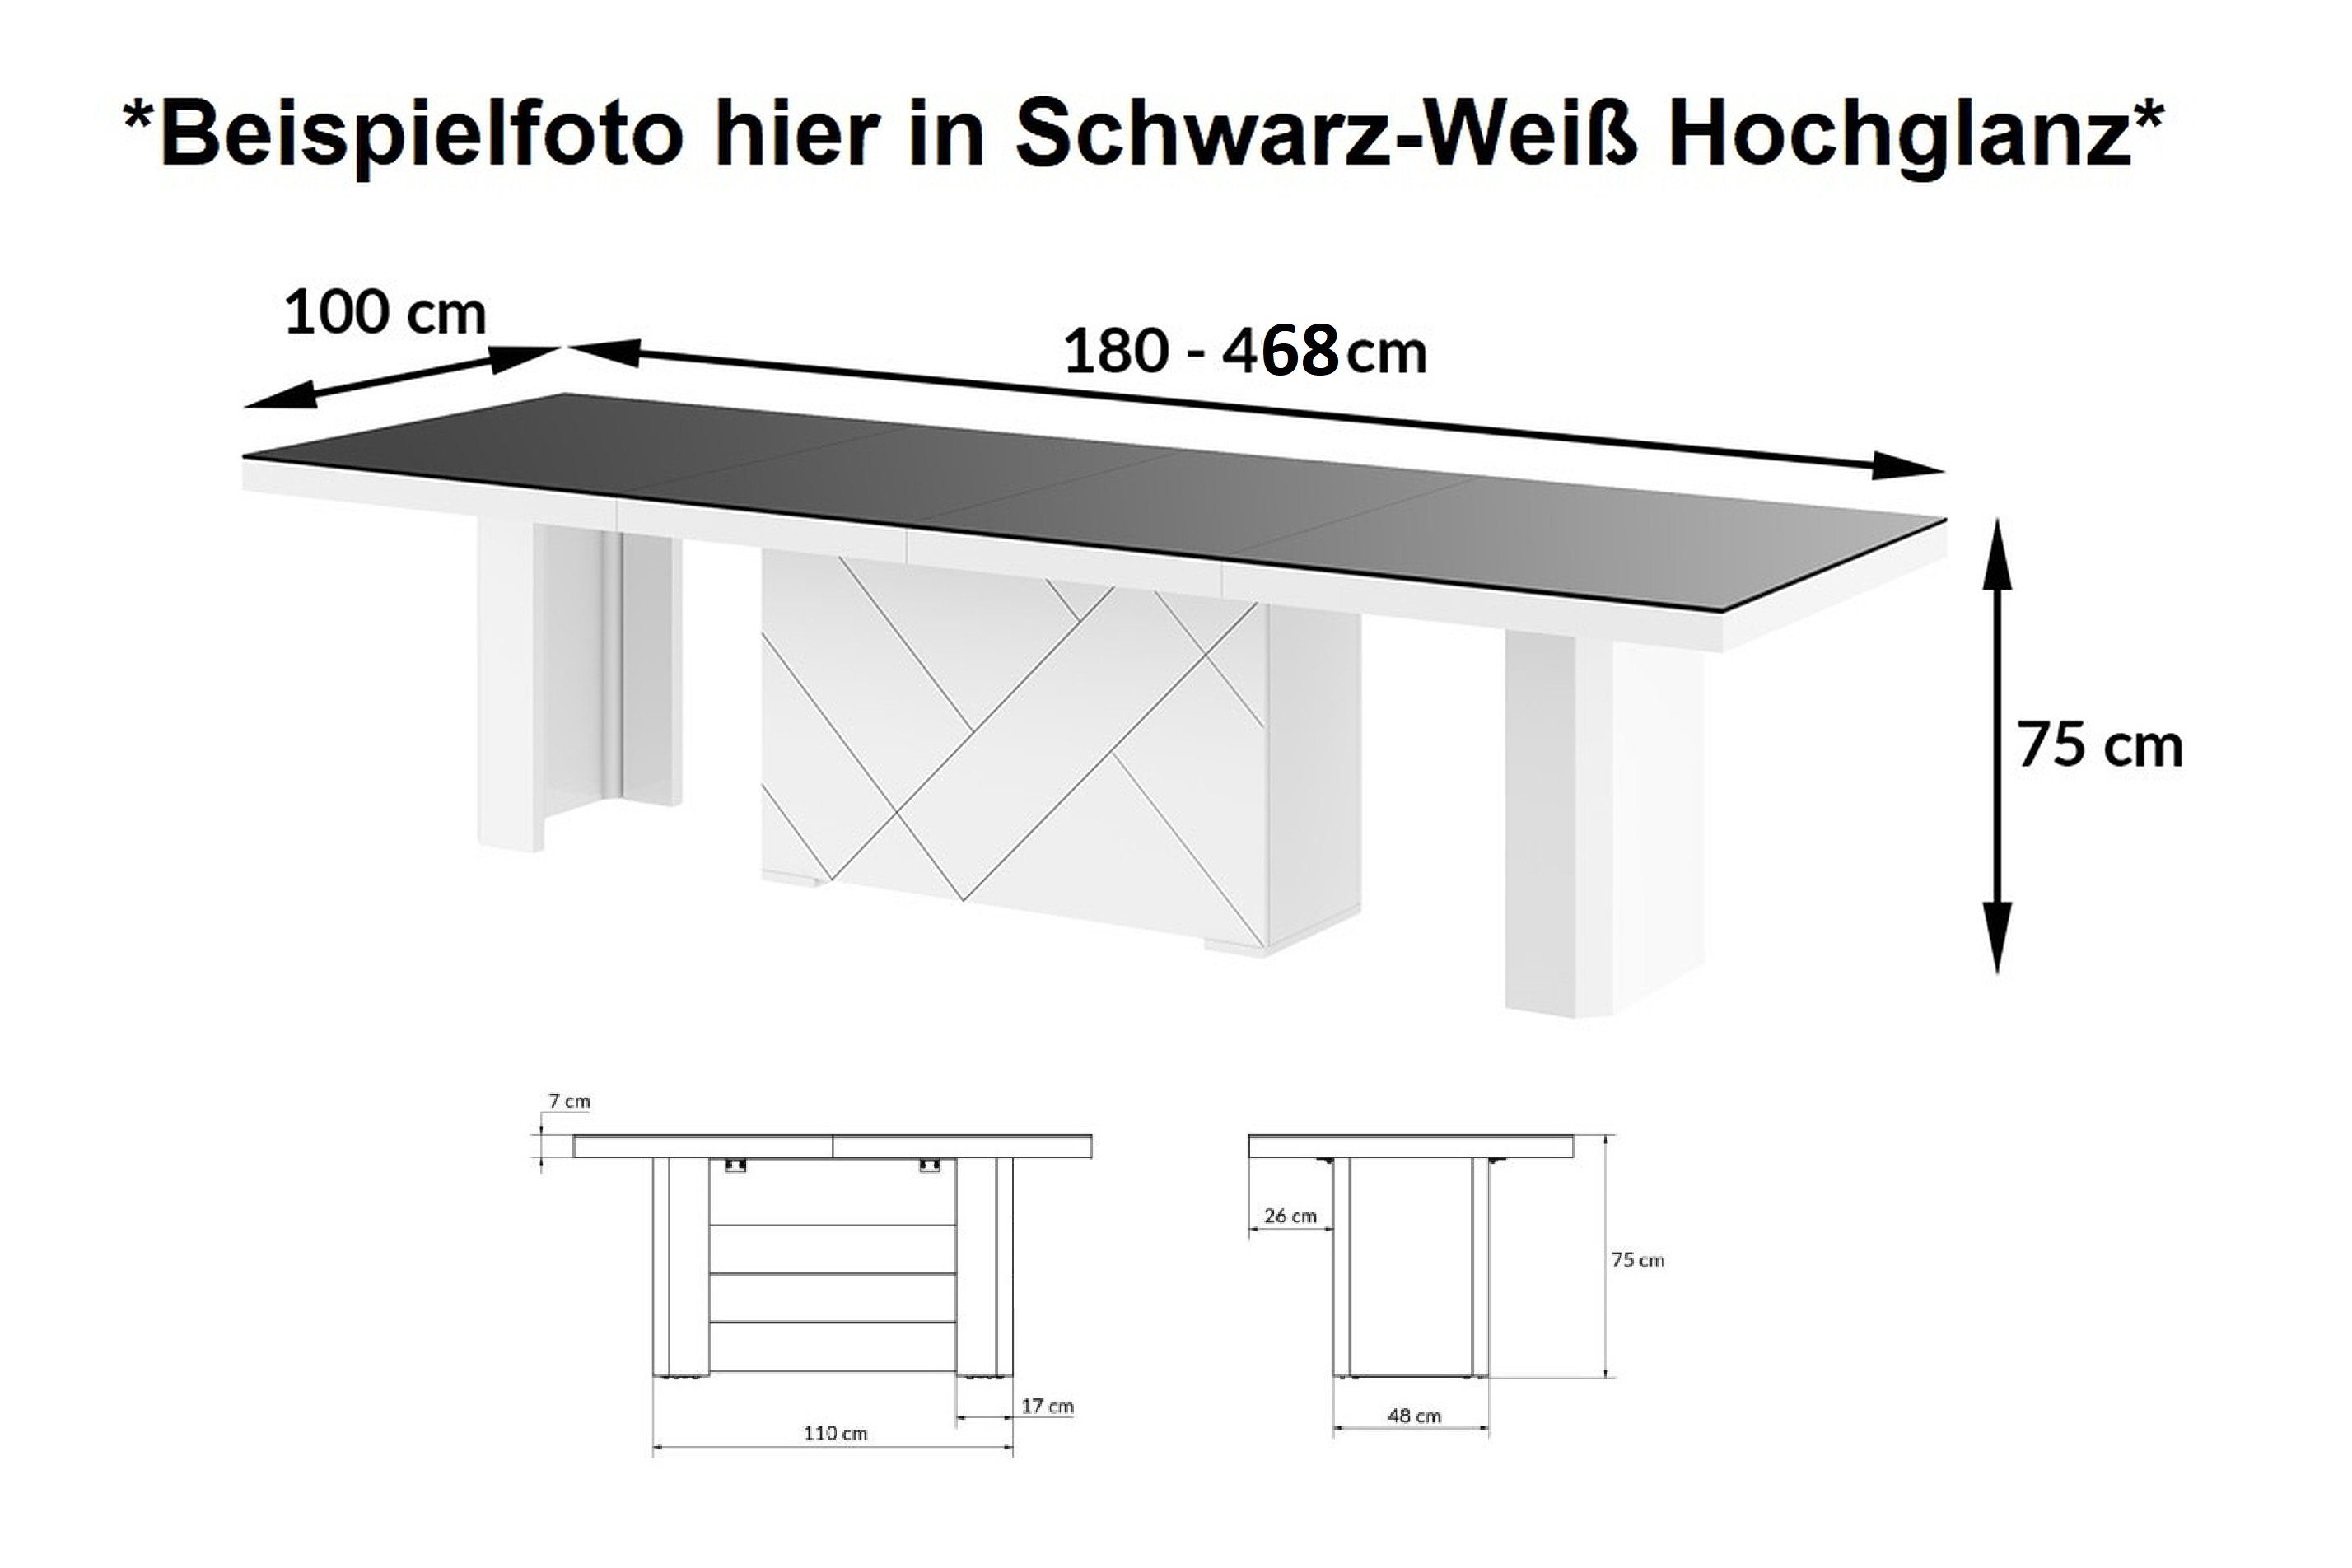 Esstisch ausziehbar designimpex bis / XXL Design Weiß Hochglanz Hochglanz cm HEK-111 180 Grau Grau Hochglanz Weiß 468 /